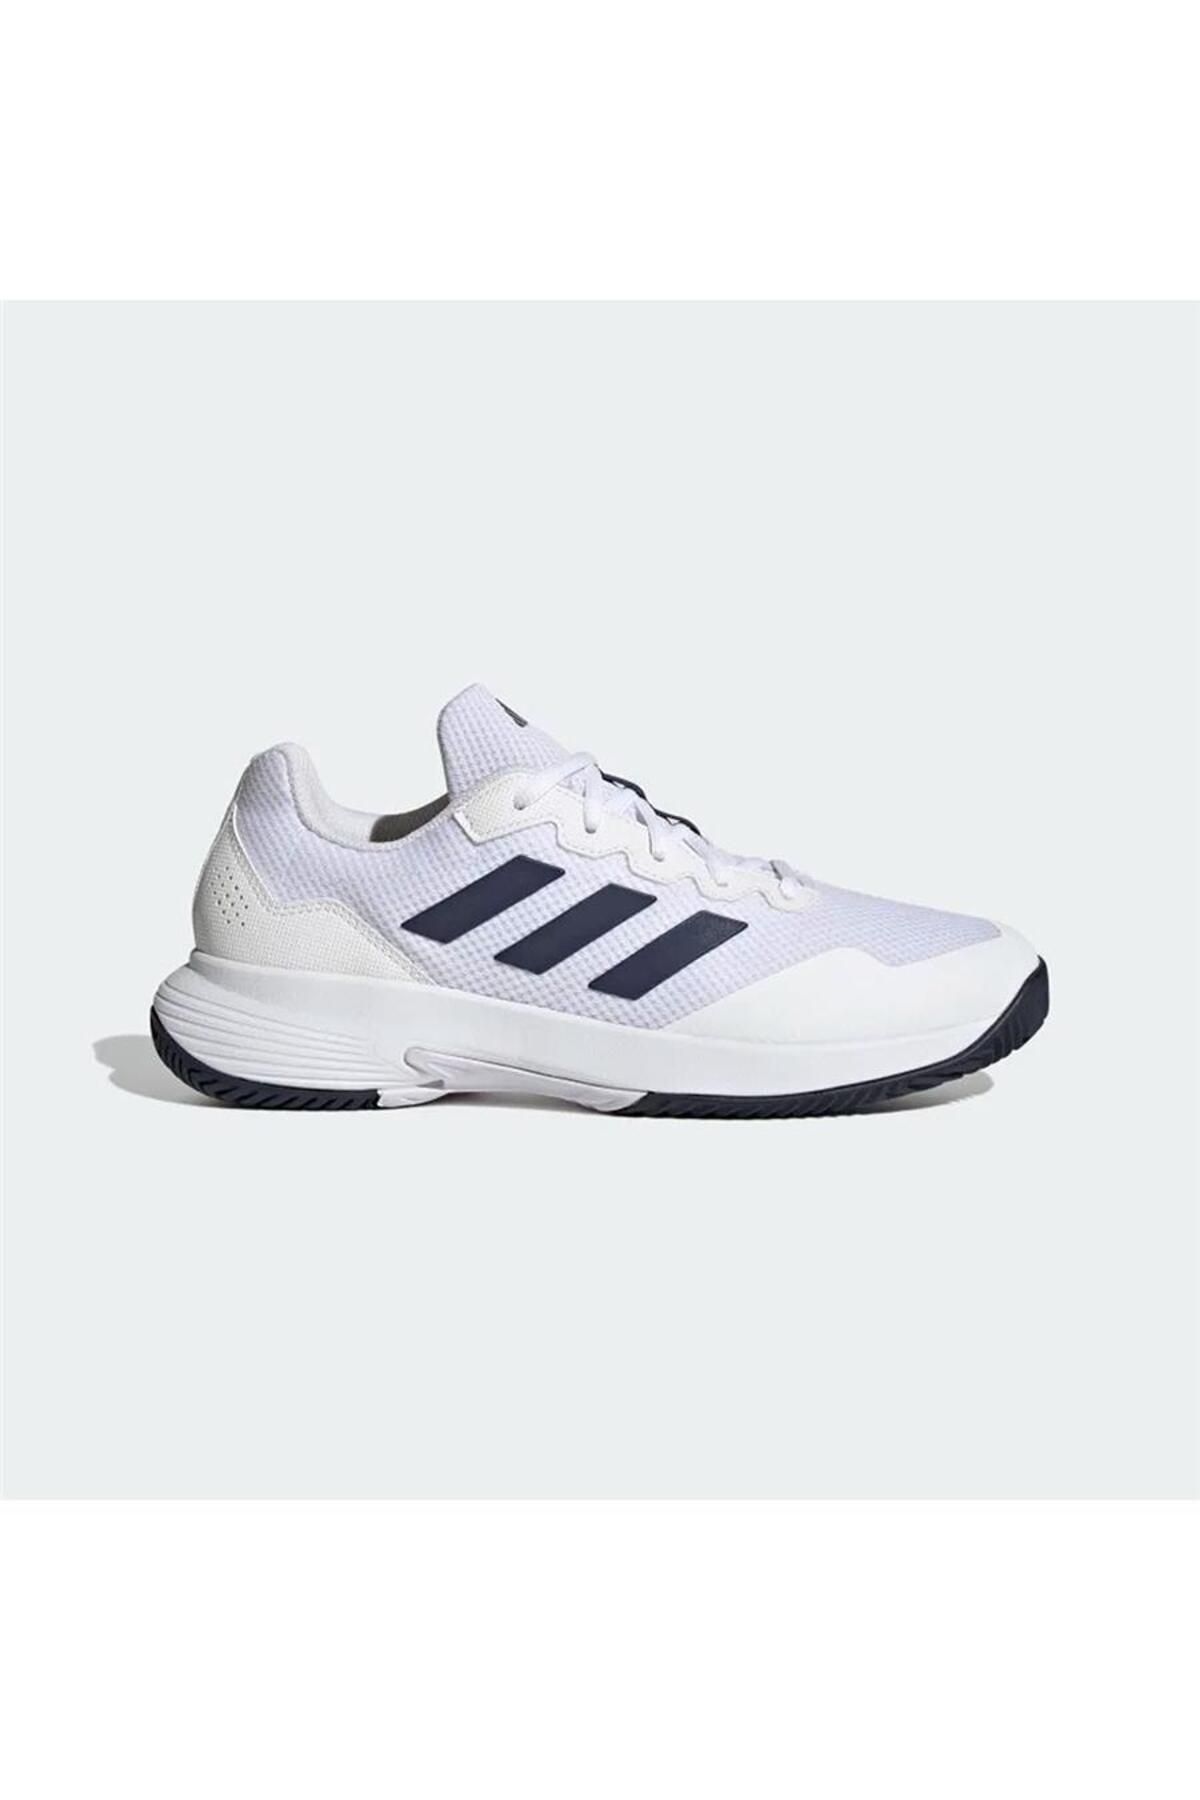 adidas Erkek Tenis Ayakkabısı Hq8809